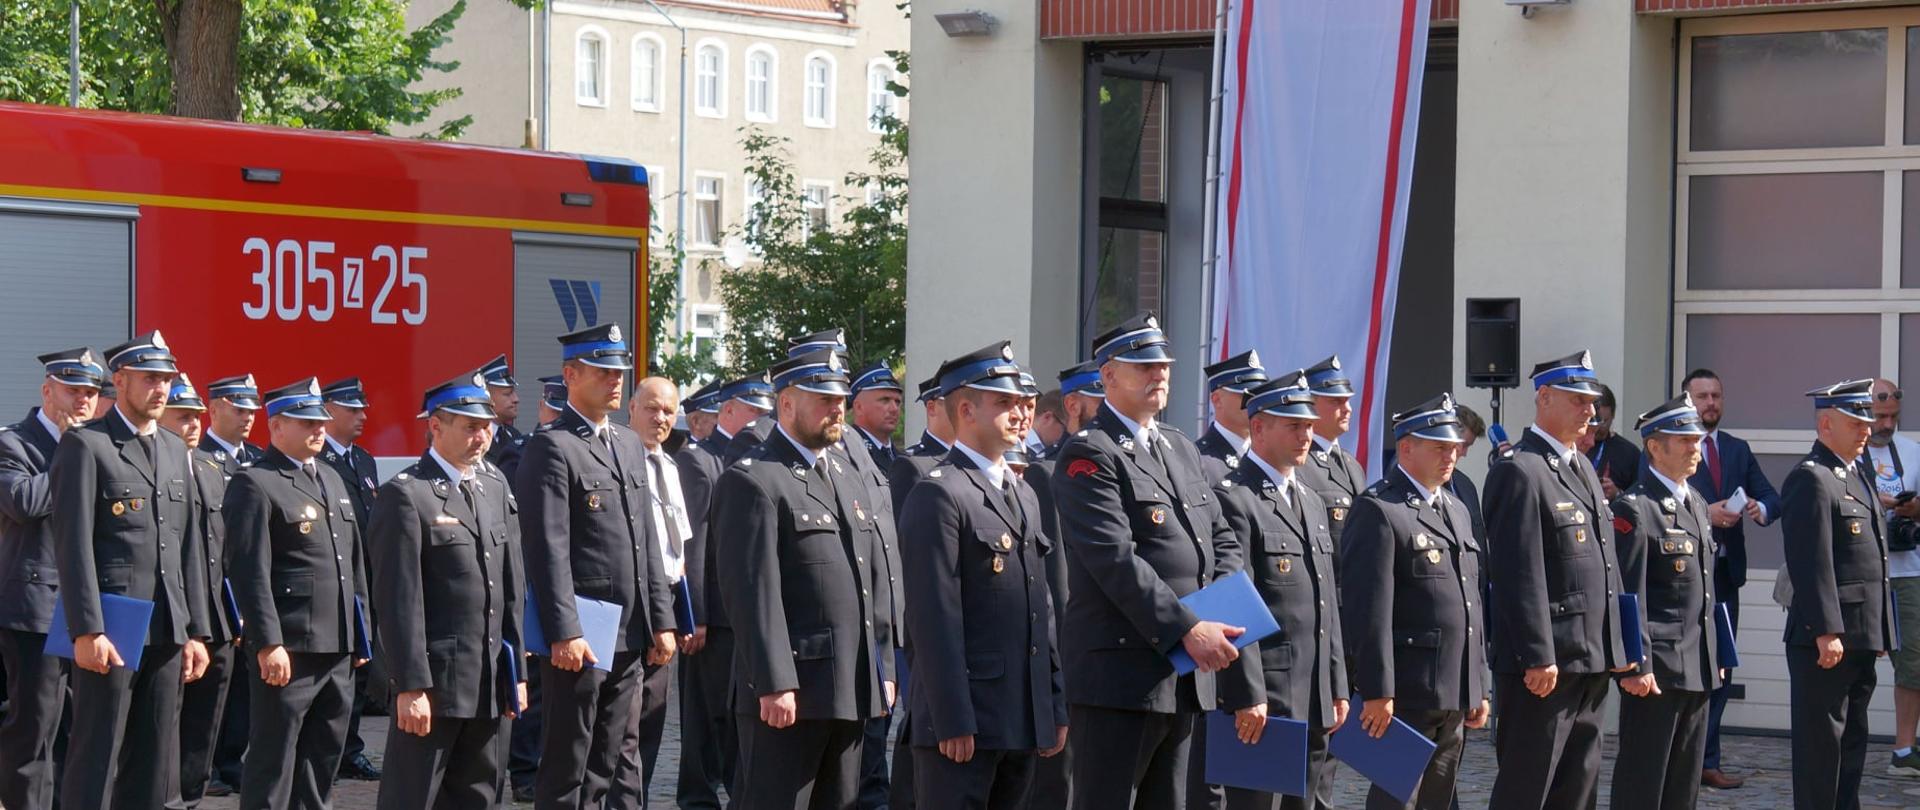 Na zdjęciu widoczni są strażacy druhowie wraz z niebieski teczkami - grantami. W tle widać budynek Komendy Wojewódzkiej PSP w Szczecinie oraz samochód ratowniczo-gaśniczy